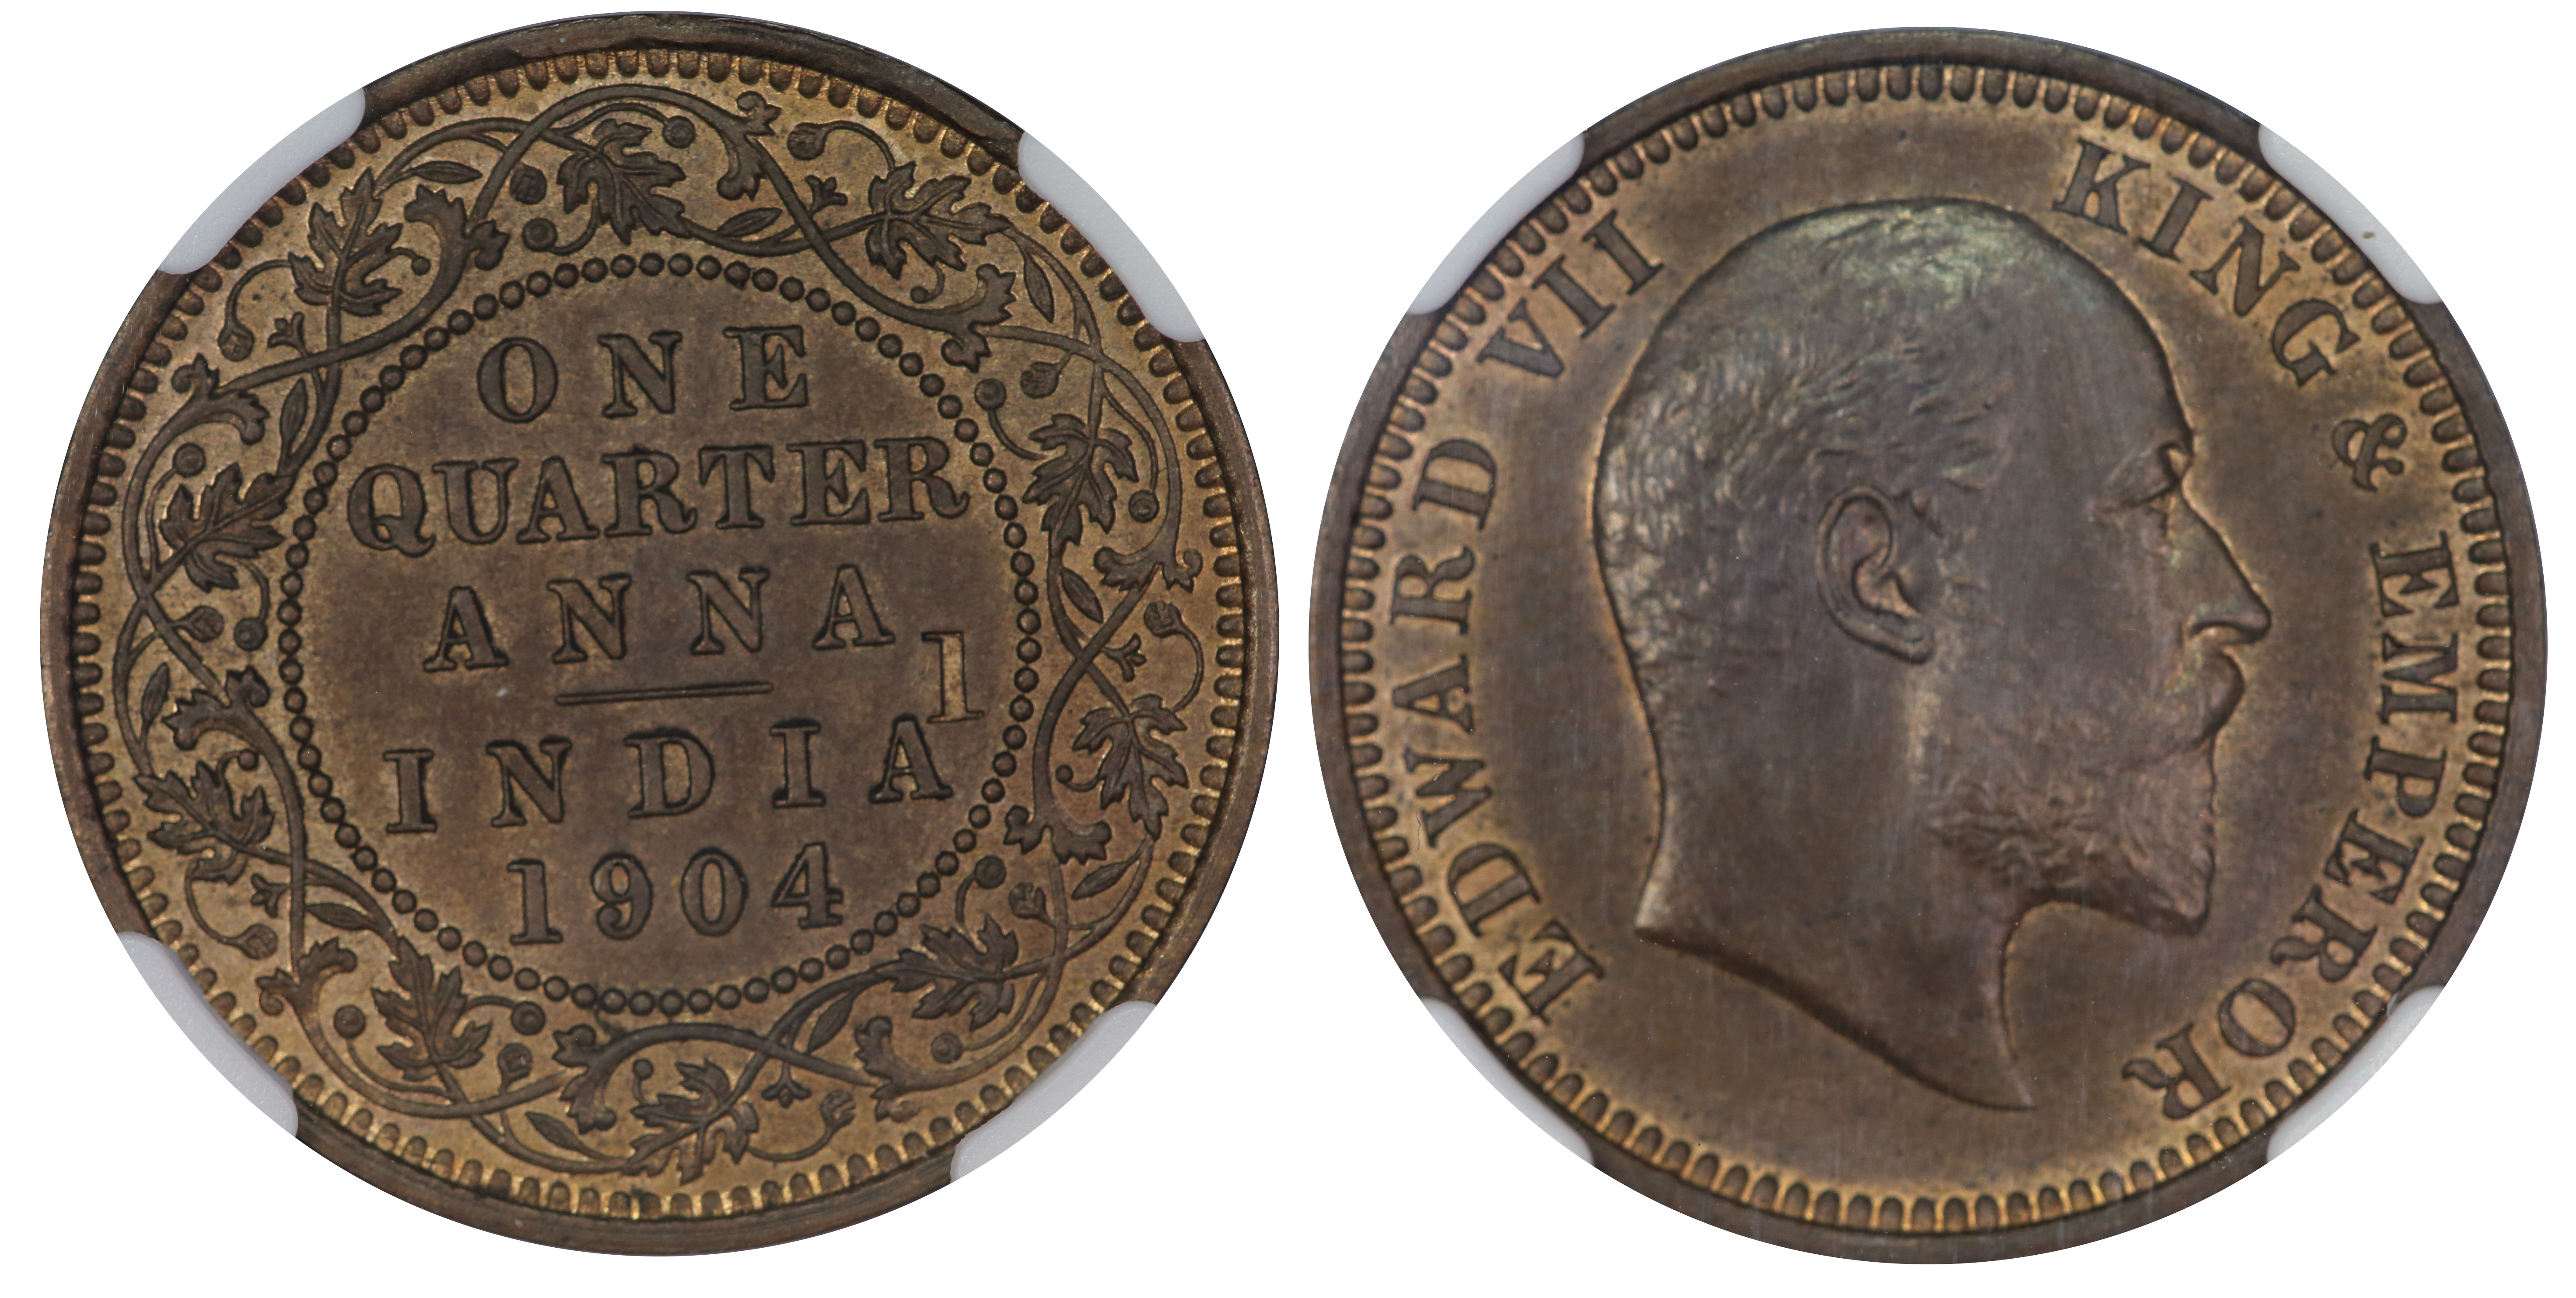 British India Edward VII, 1904 Copper & Bronze Die Trial set – 4 coins